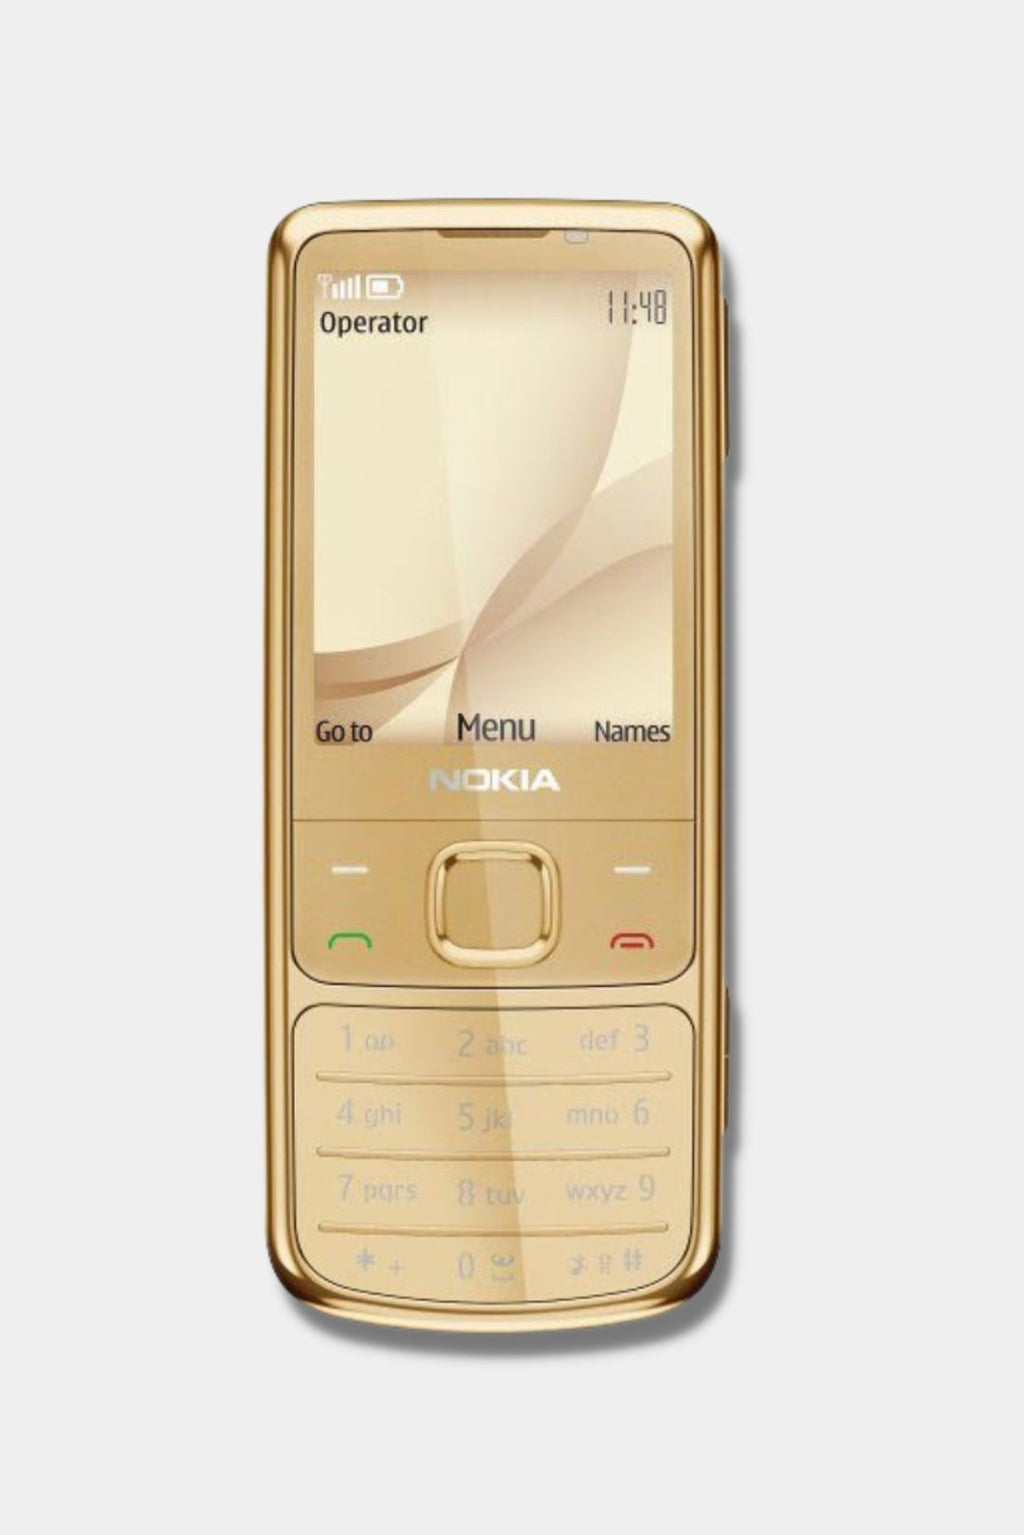 Купить 6700 оригинал. Nokia 6700 Gold. Nokia 6700 Classic Gold. Нокиа 6700 золотой. Nokia 6700 Classic Gold Edition.